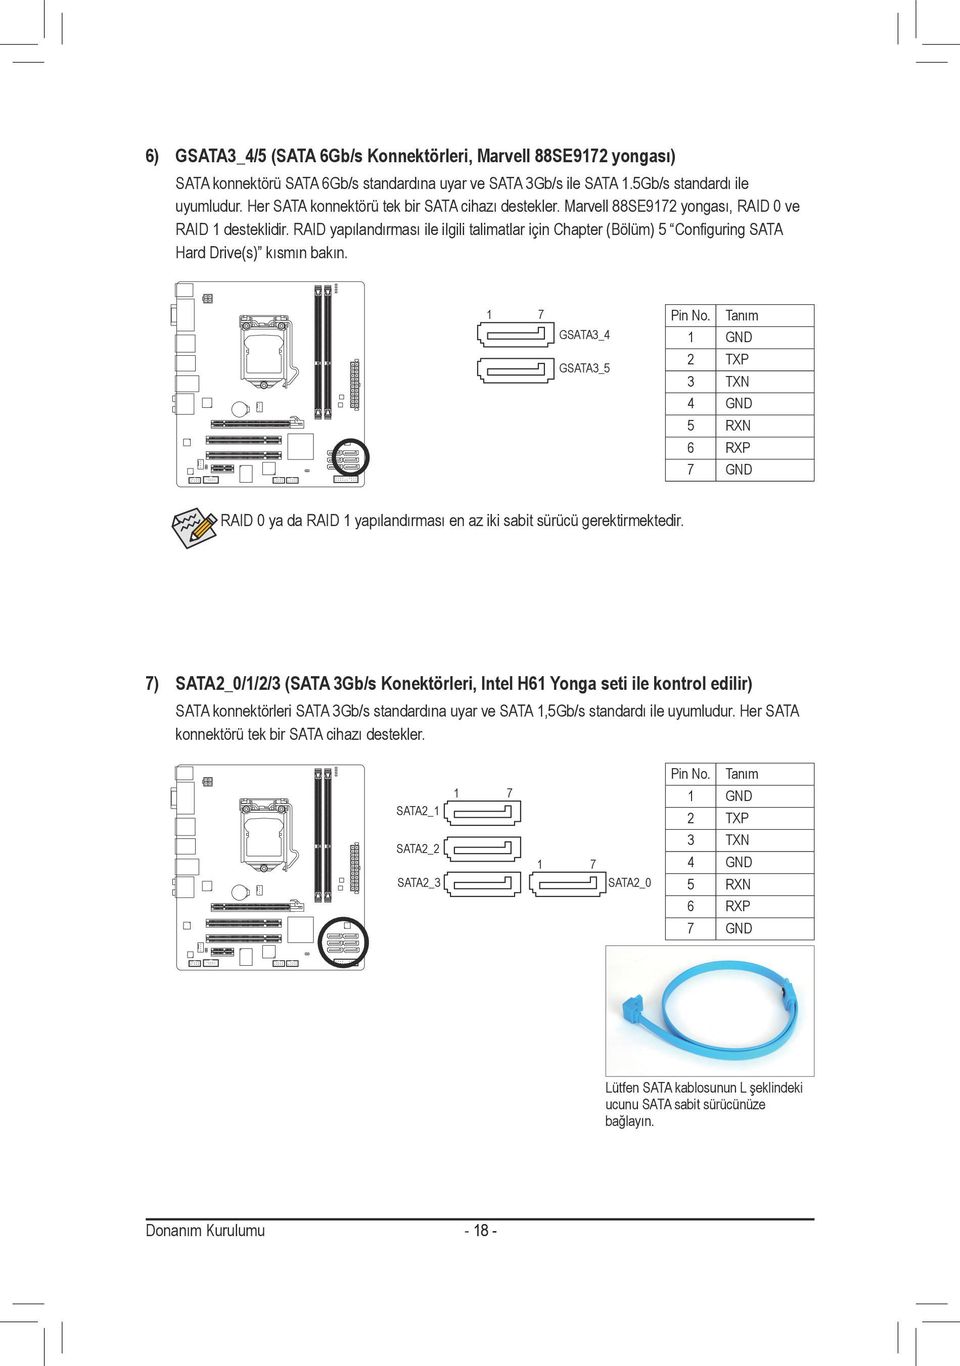 RAID yapılandırması ile ilgili talimatlar için Chapter (Bölüm) 5 Configuring SATA Hard Drive(s) kısmın bakın. Pin No.